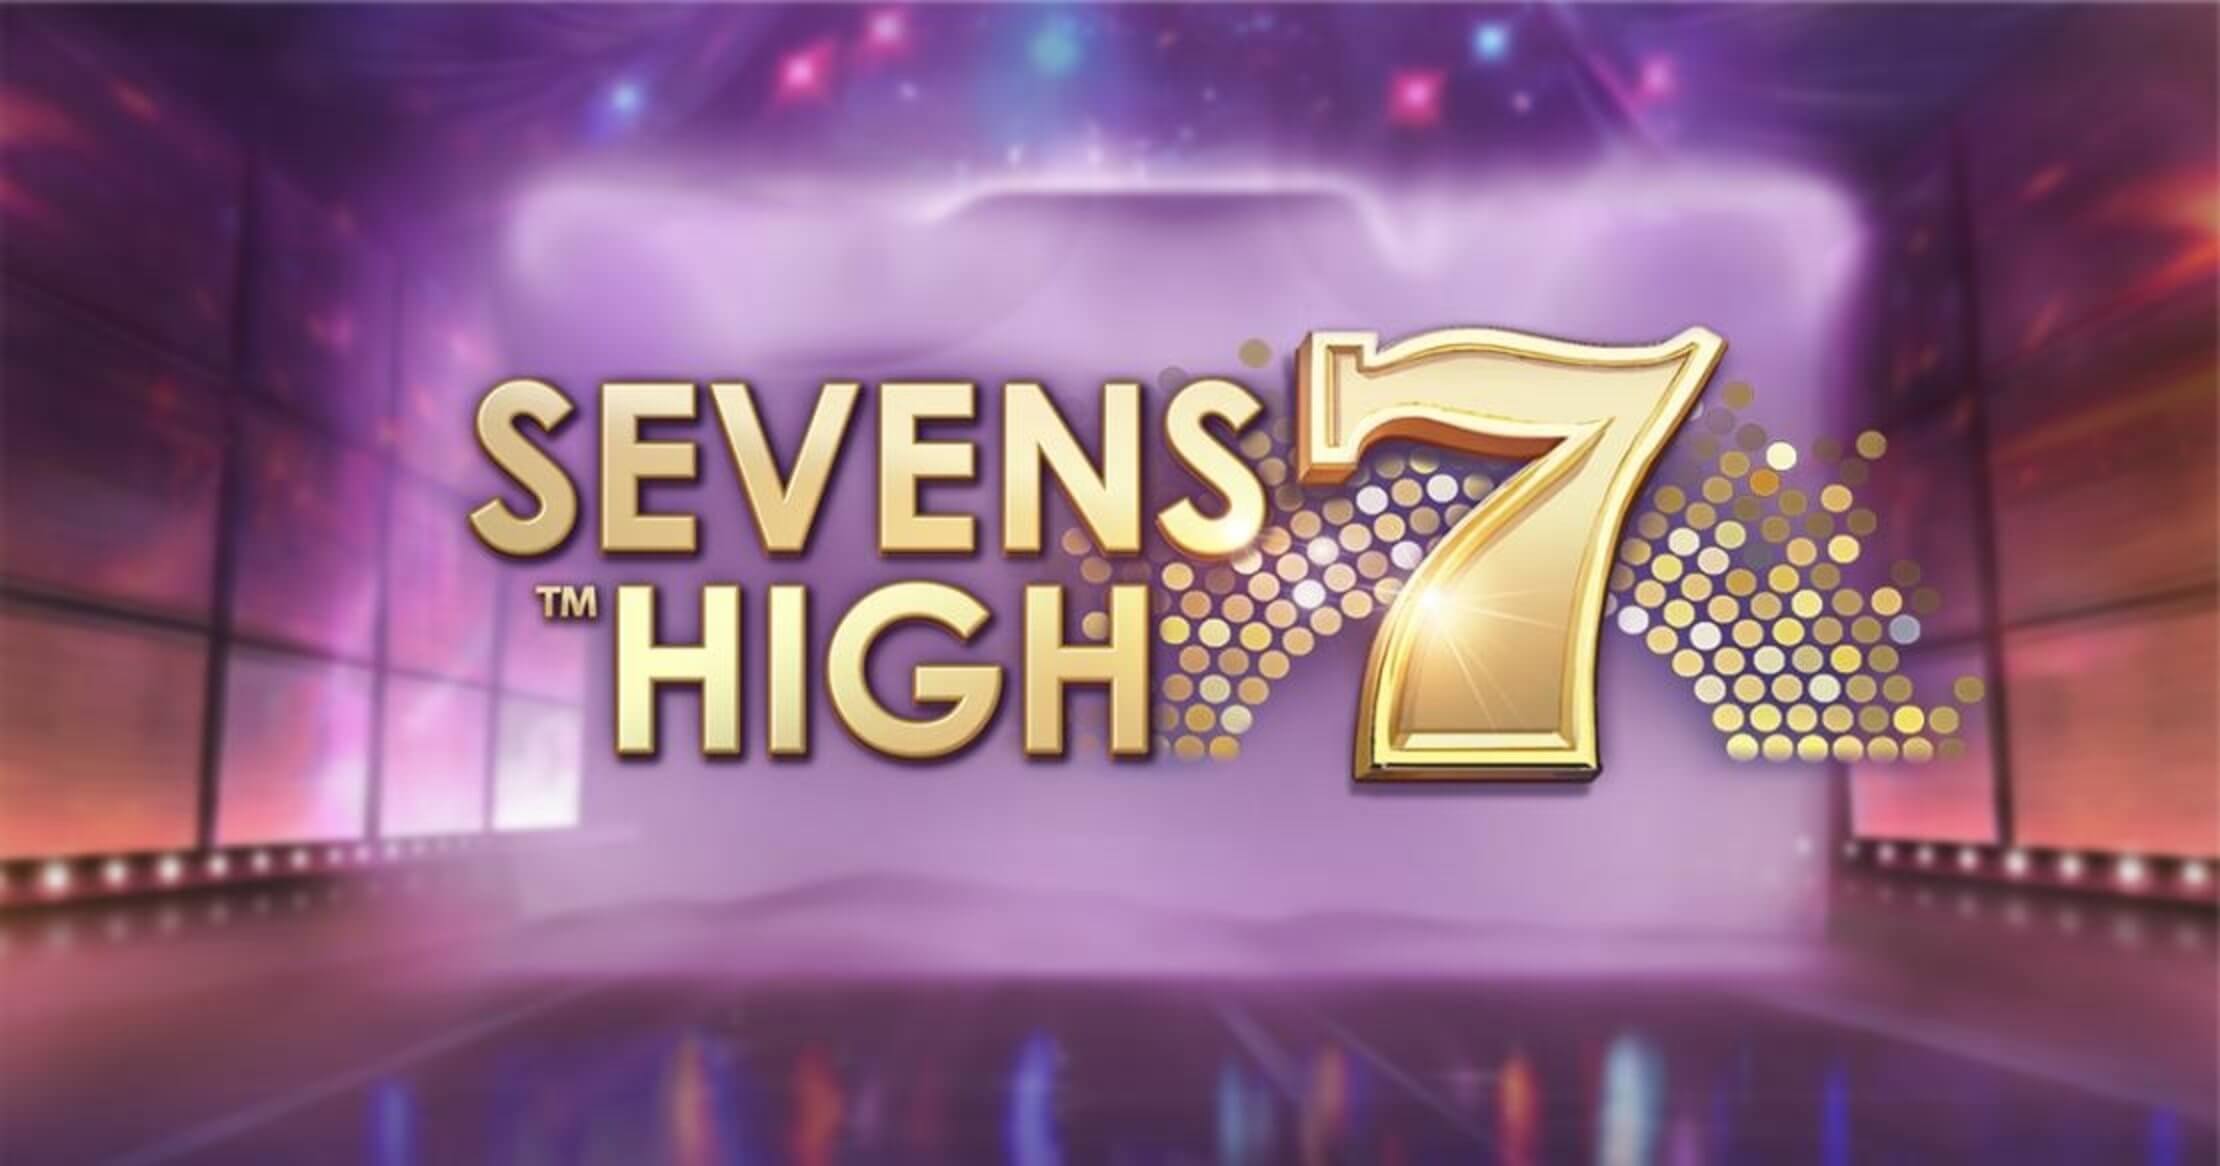 Sevens high